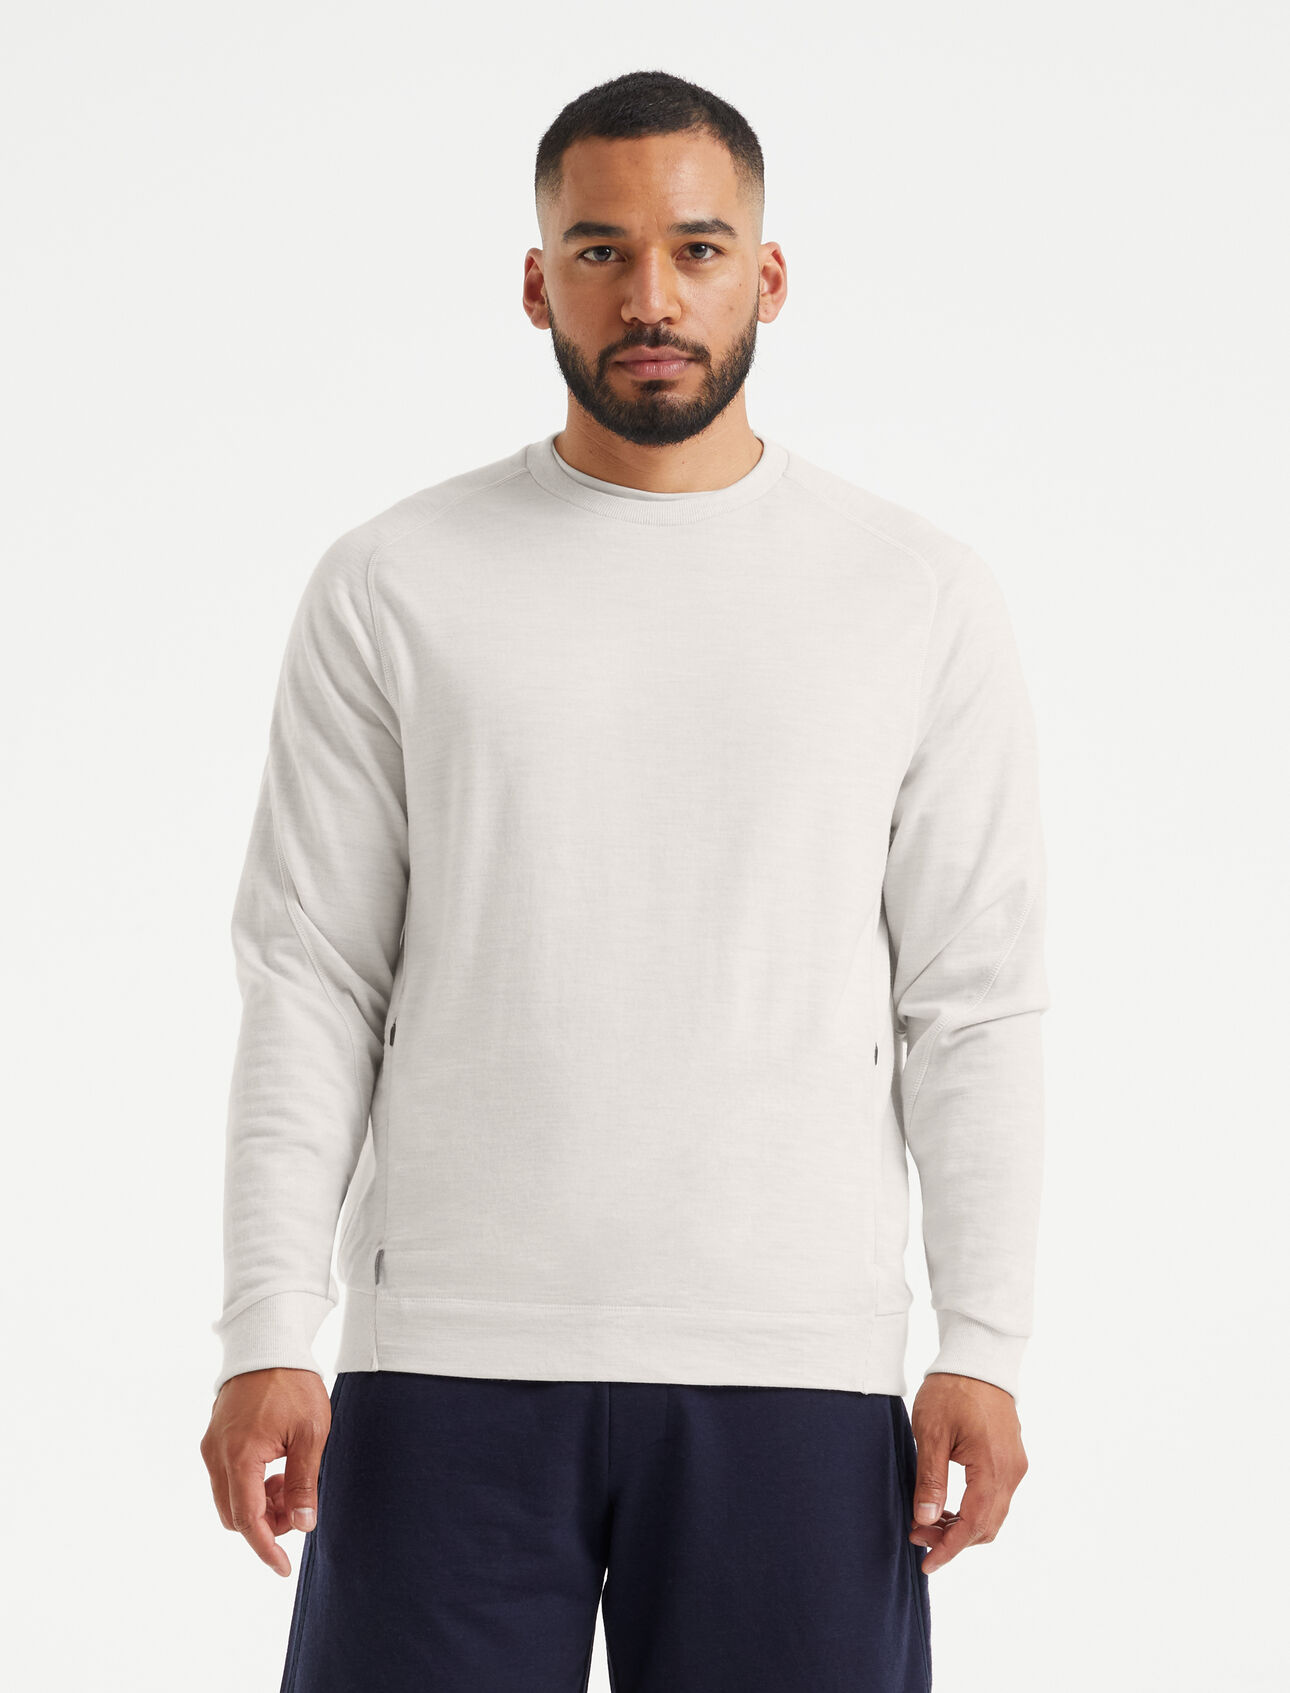 Merino Sweatshirt Herren Ein klassisches Rundhals-Sweatshirt aus 100% Merinowolle in French Terry, das Merino Sweatshirt kombiniert Komfort mit edlen, modernen Details.